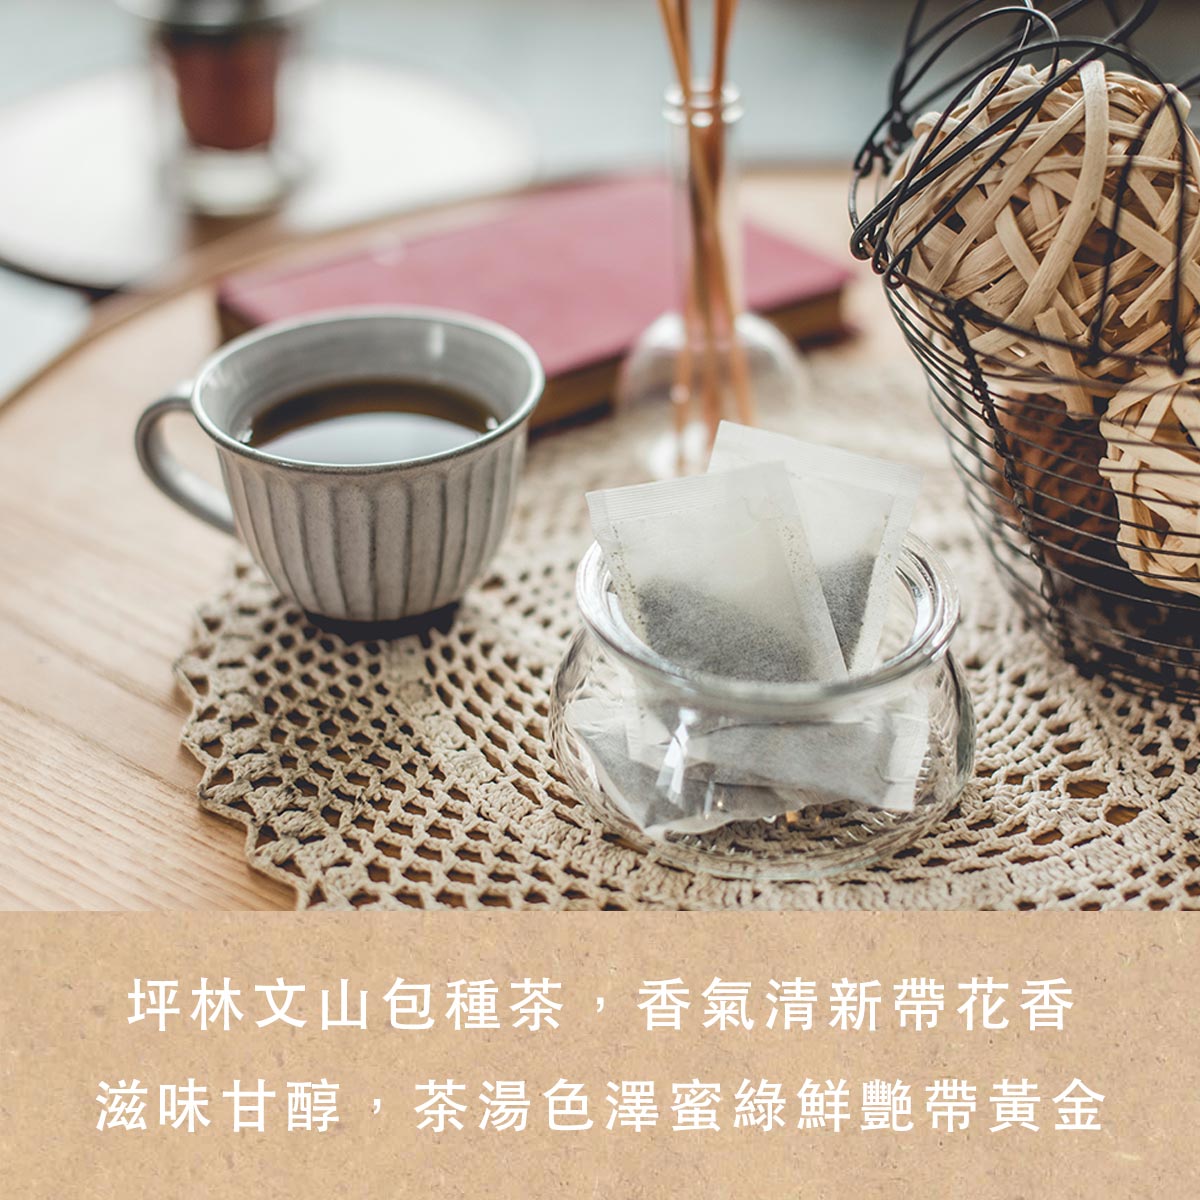 台灣有大陸沒有的東西｜大陸人喜歡的台灣零食推薦人氣包種茶包